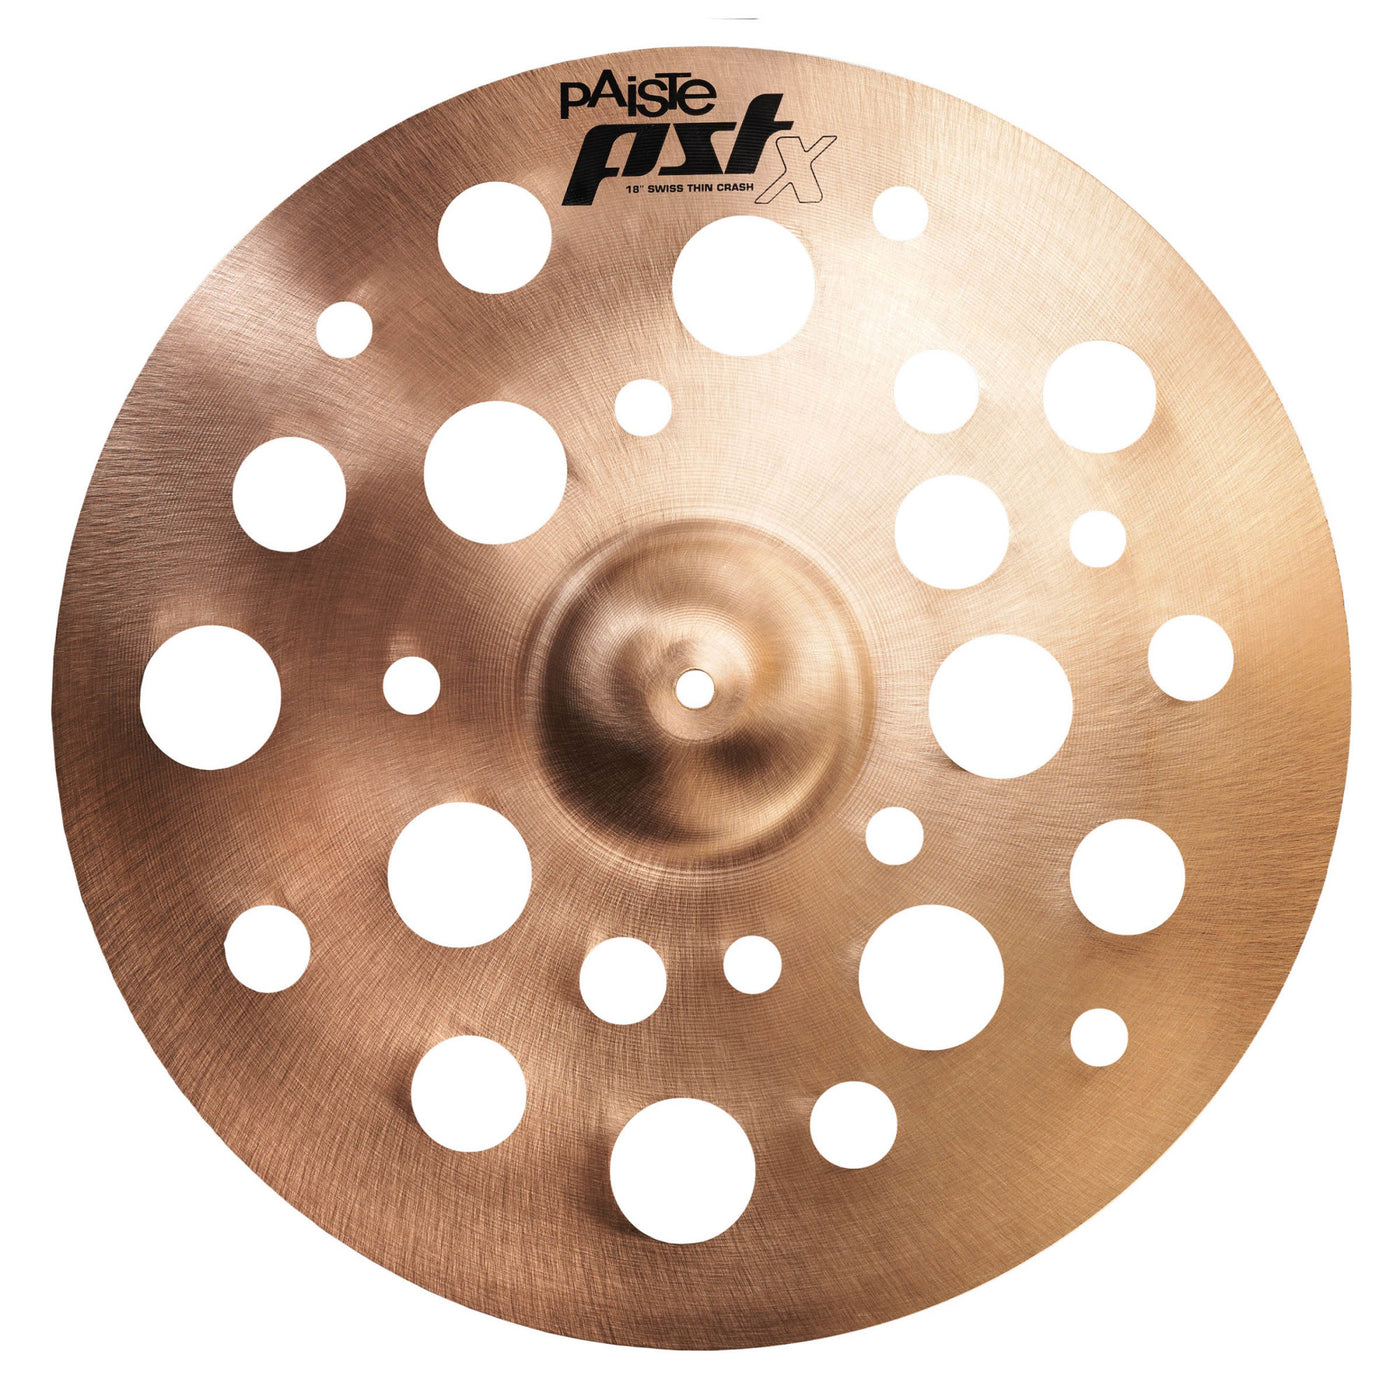 Paiste PST X Swiss Thin Crash Cymbal - 18"